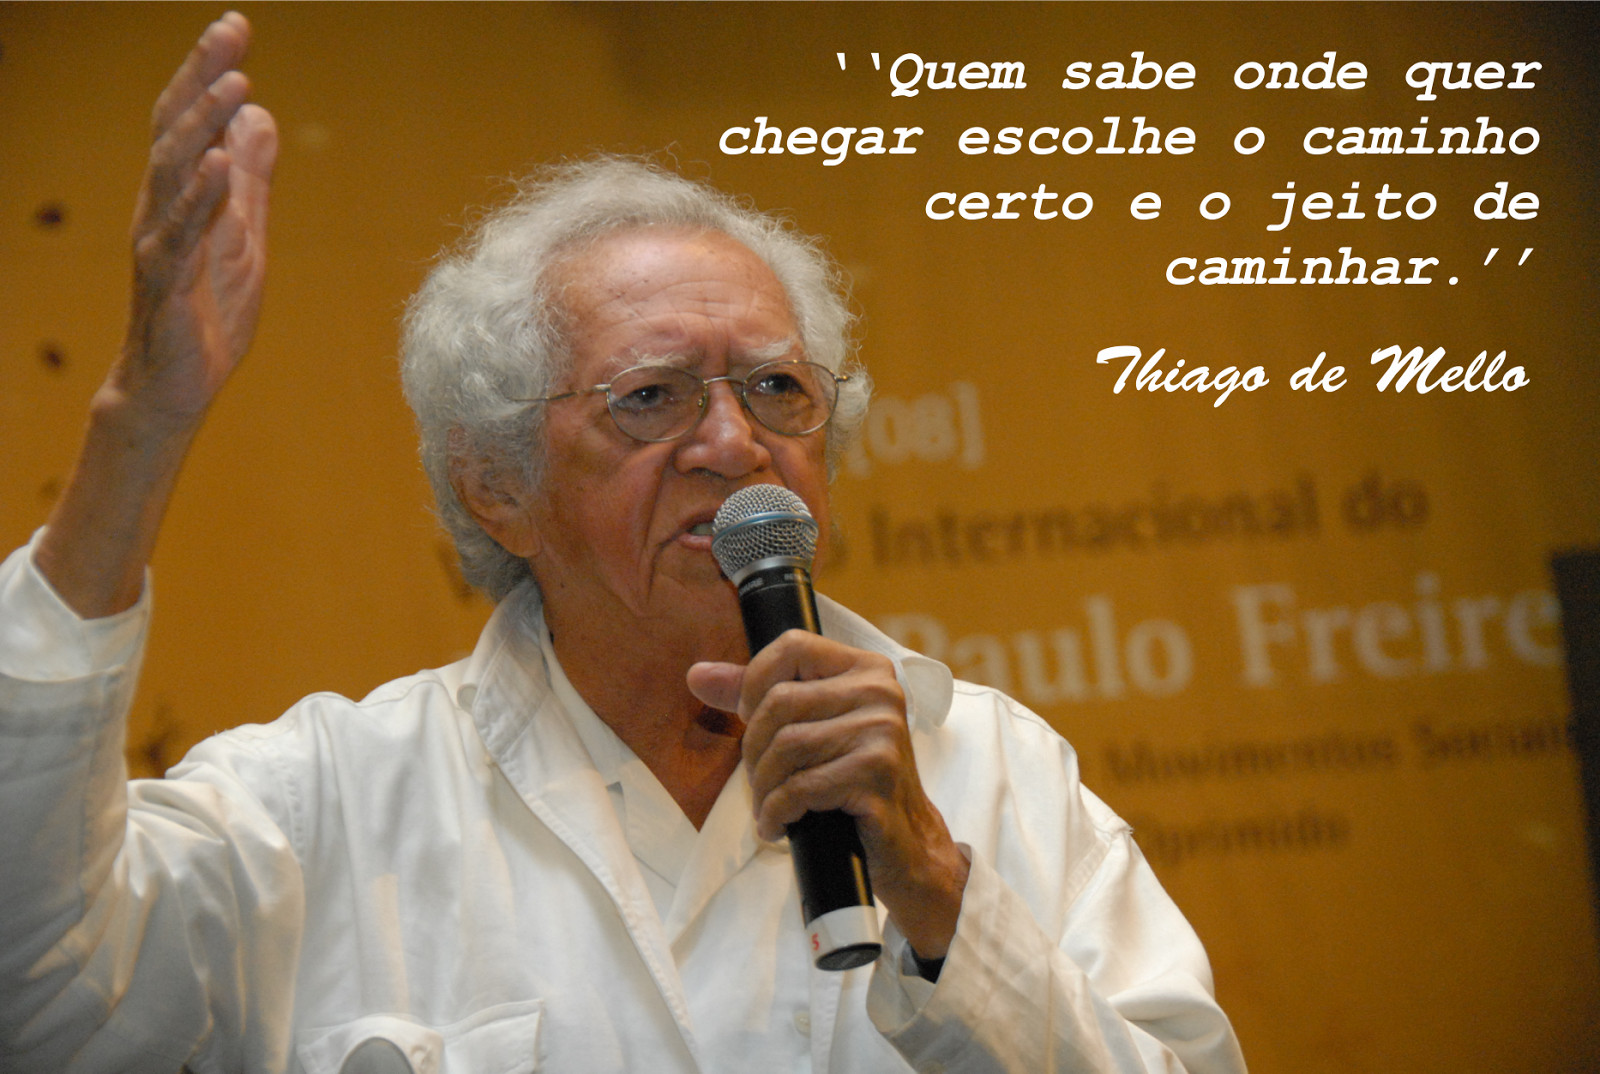 TRIBUNA DA INTERNET | Uma aula de cidadania, pelo poeta Thiago de Mello